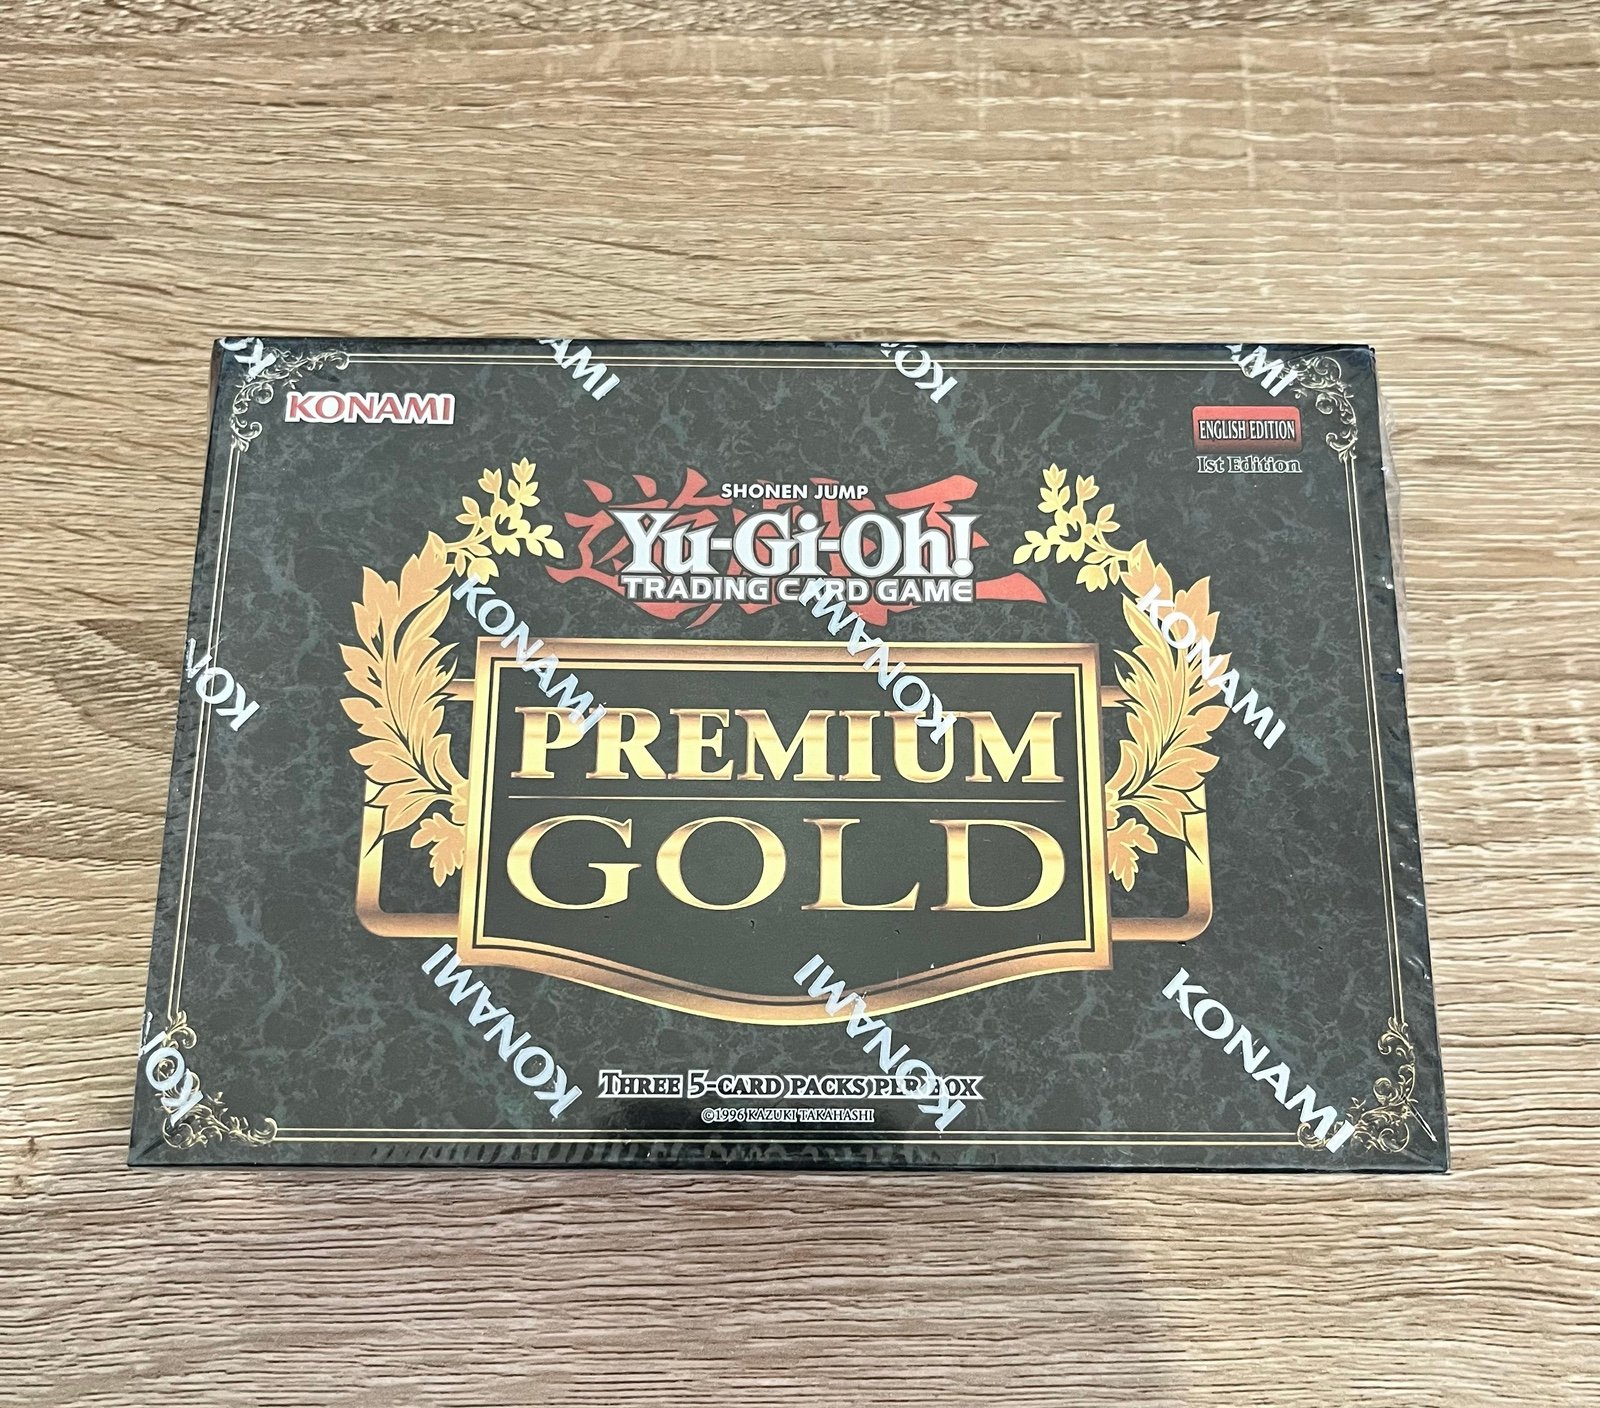 2014 Yugioh King of Bling Premium Gold - Sealed G61DMhsMn